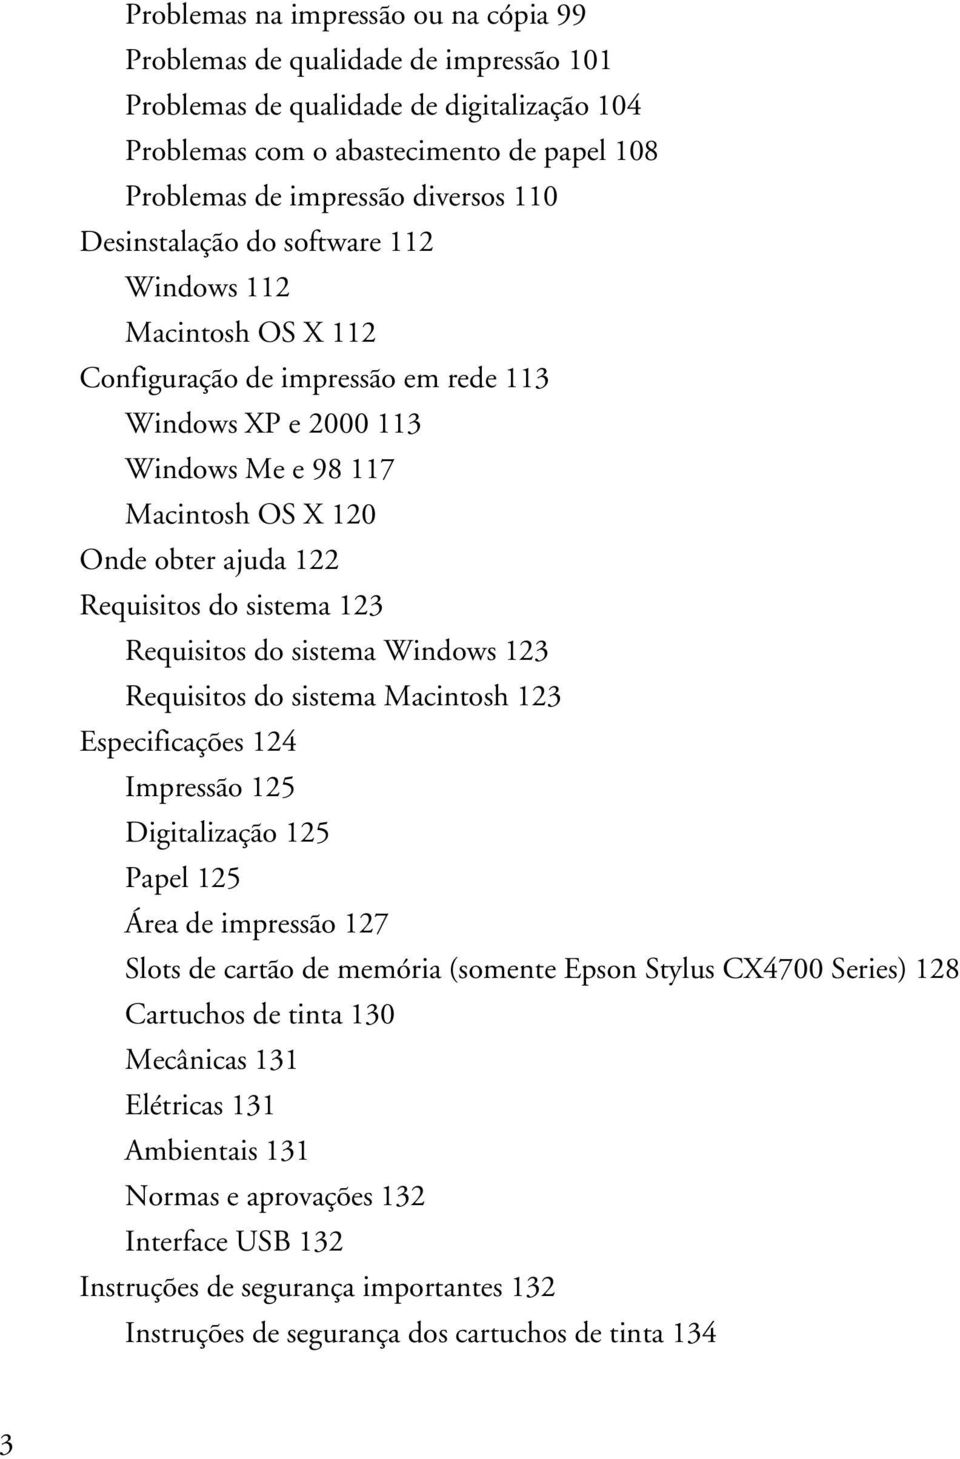 sistema 123 Requisitos do sistema Windows 123 Requisitos do sistema Macintosh 123 Especificações 124 Impressão 125 Digitalização 125 Papel 125 Área de impressão 127 Slots de cartão de memória